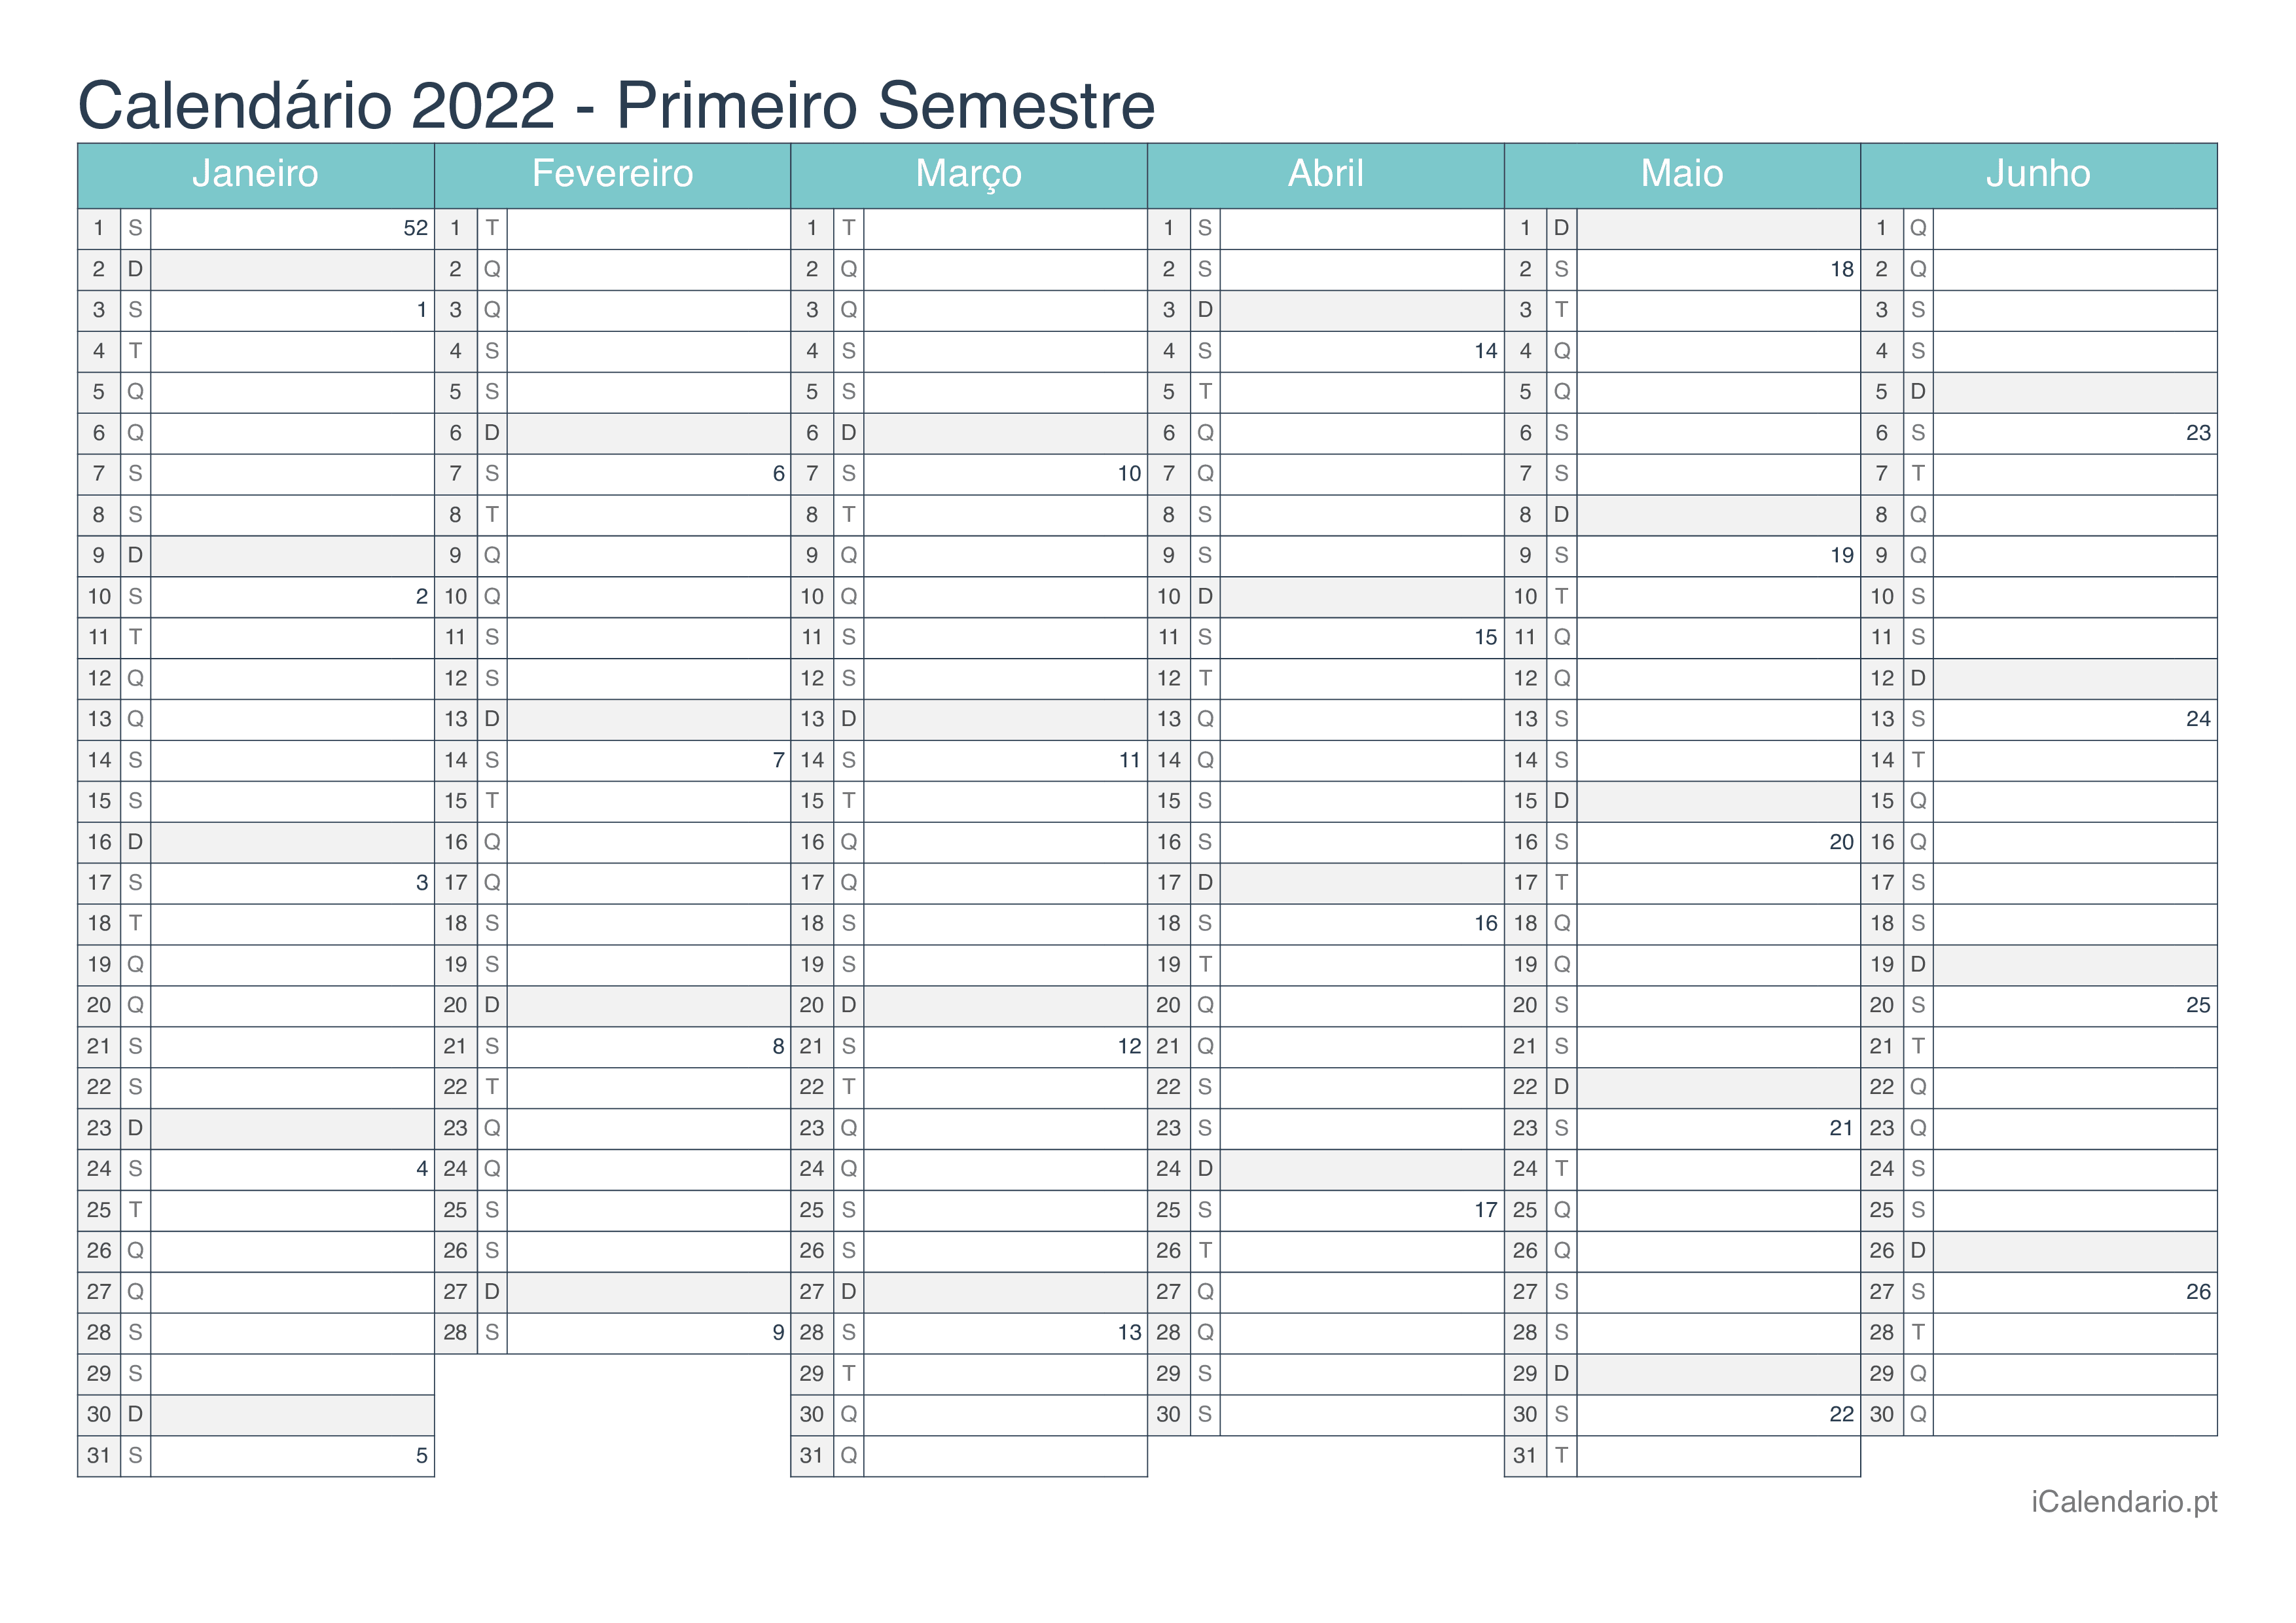 Calendário por semestre com números da semana 2022 - Turquesa